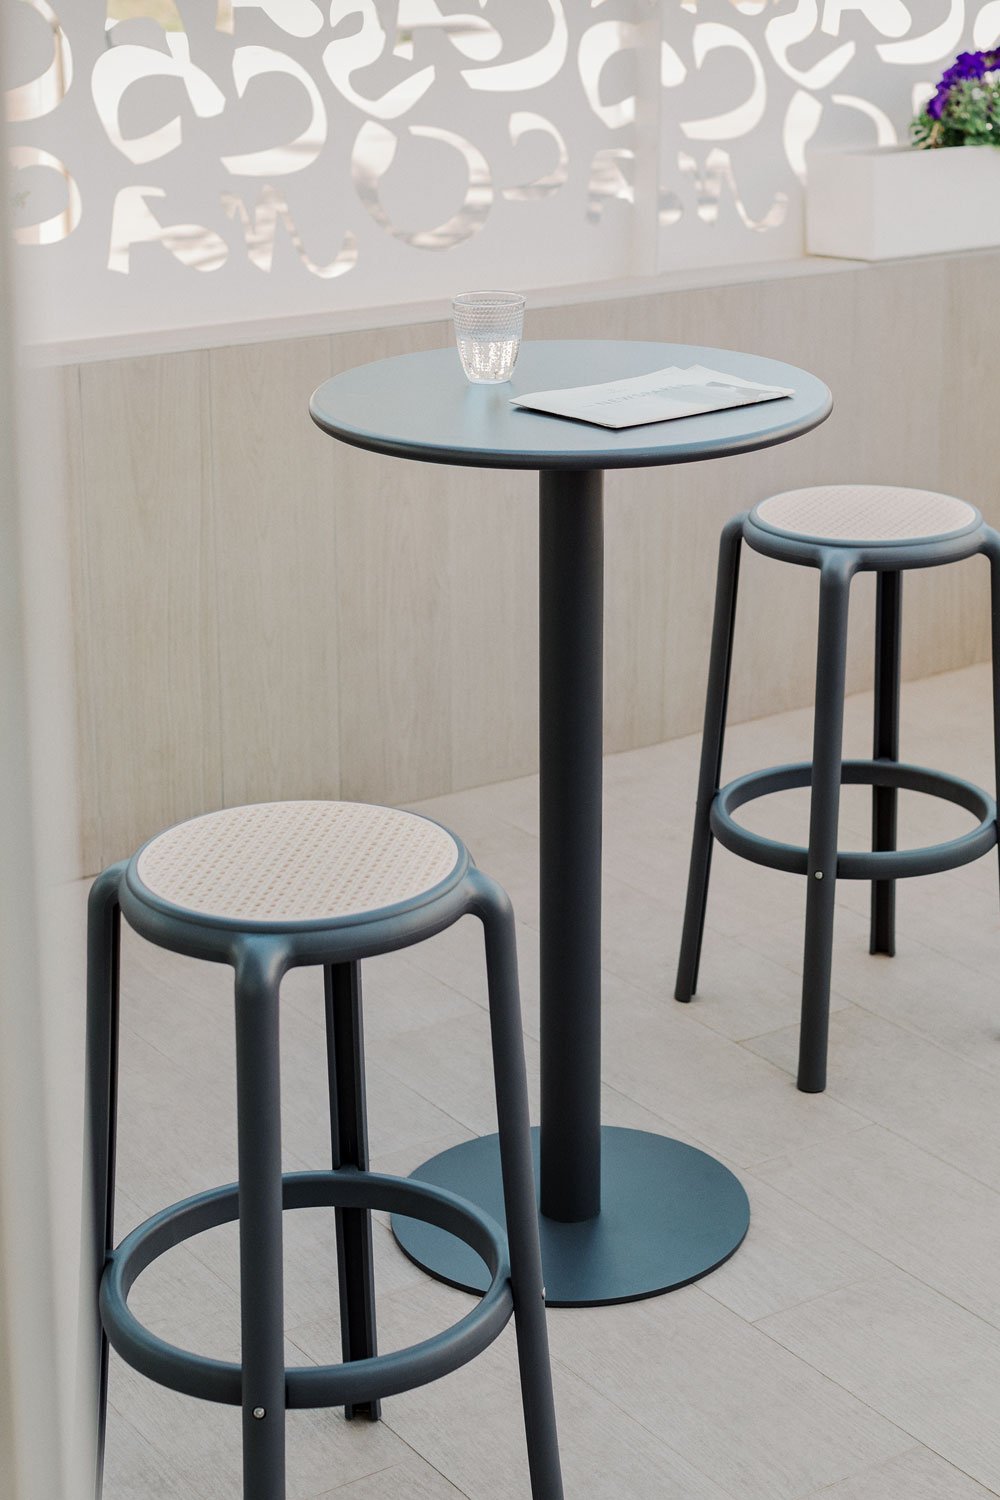 Zestaw wysokiego stołu okrągłego, metalowego Mizzi (ø60 cm) i 2 wysokie stołki ogrodowe Omara, obrazek w galerii 1